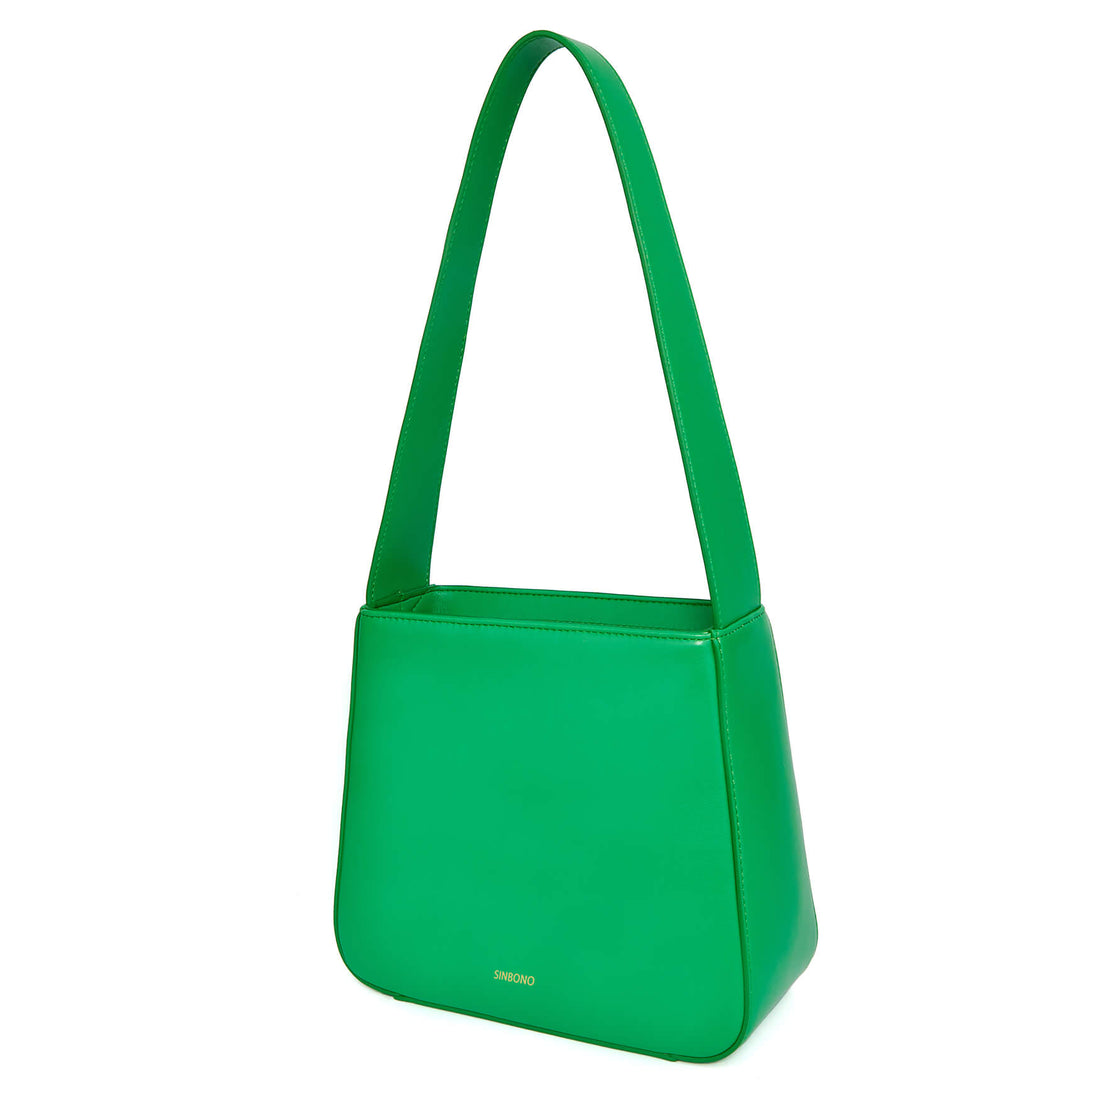 SINBONO Women Shoulder Square Bag Grass Green - Vegan Leather Shoulder Bag